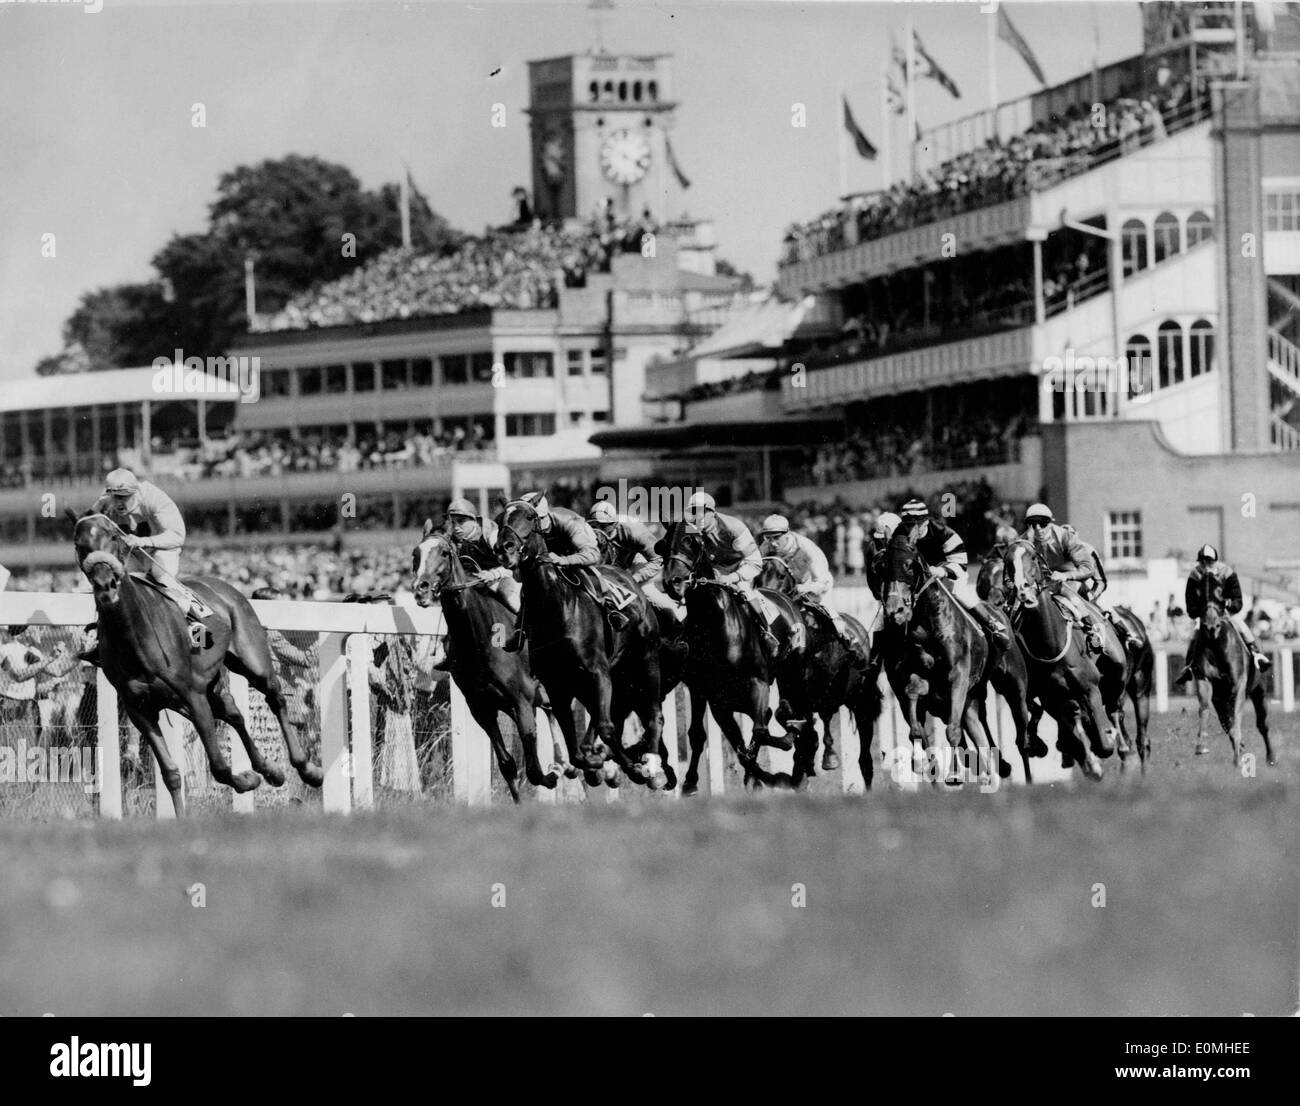 12. Juli 1955; London, UK; Pferde, die Rundung der ersten Kurve in Ascot Stakes, die von "Wildnor", geritten von C. Easton gewonnen wurde. Die Tribüne kann im Hintergrund gesehen werden. Stockfoto